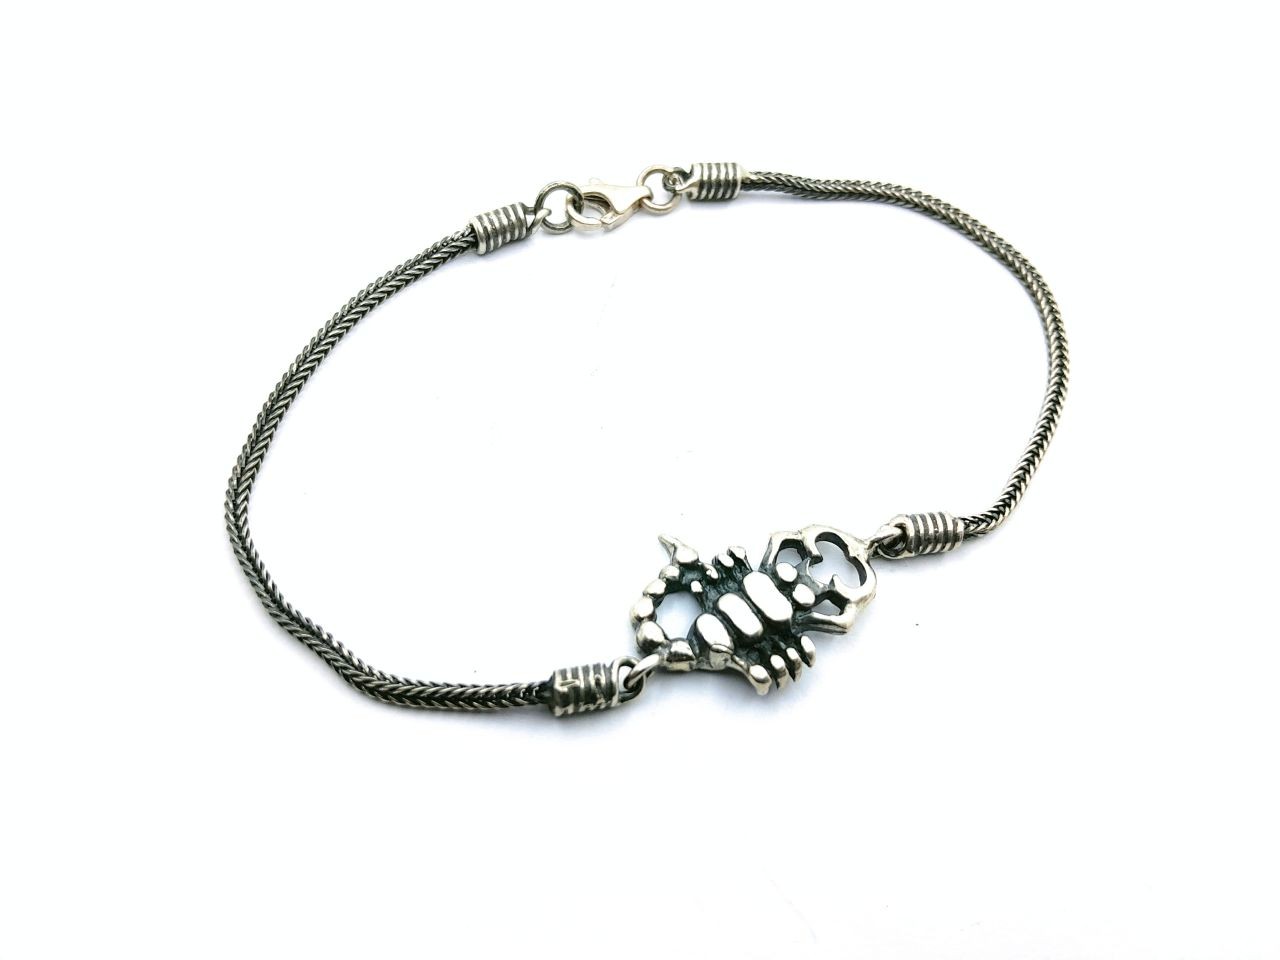 Silver bracelet in the shape of a scorpion